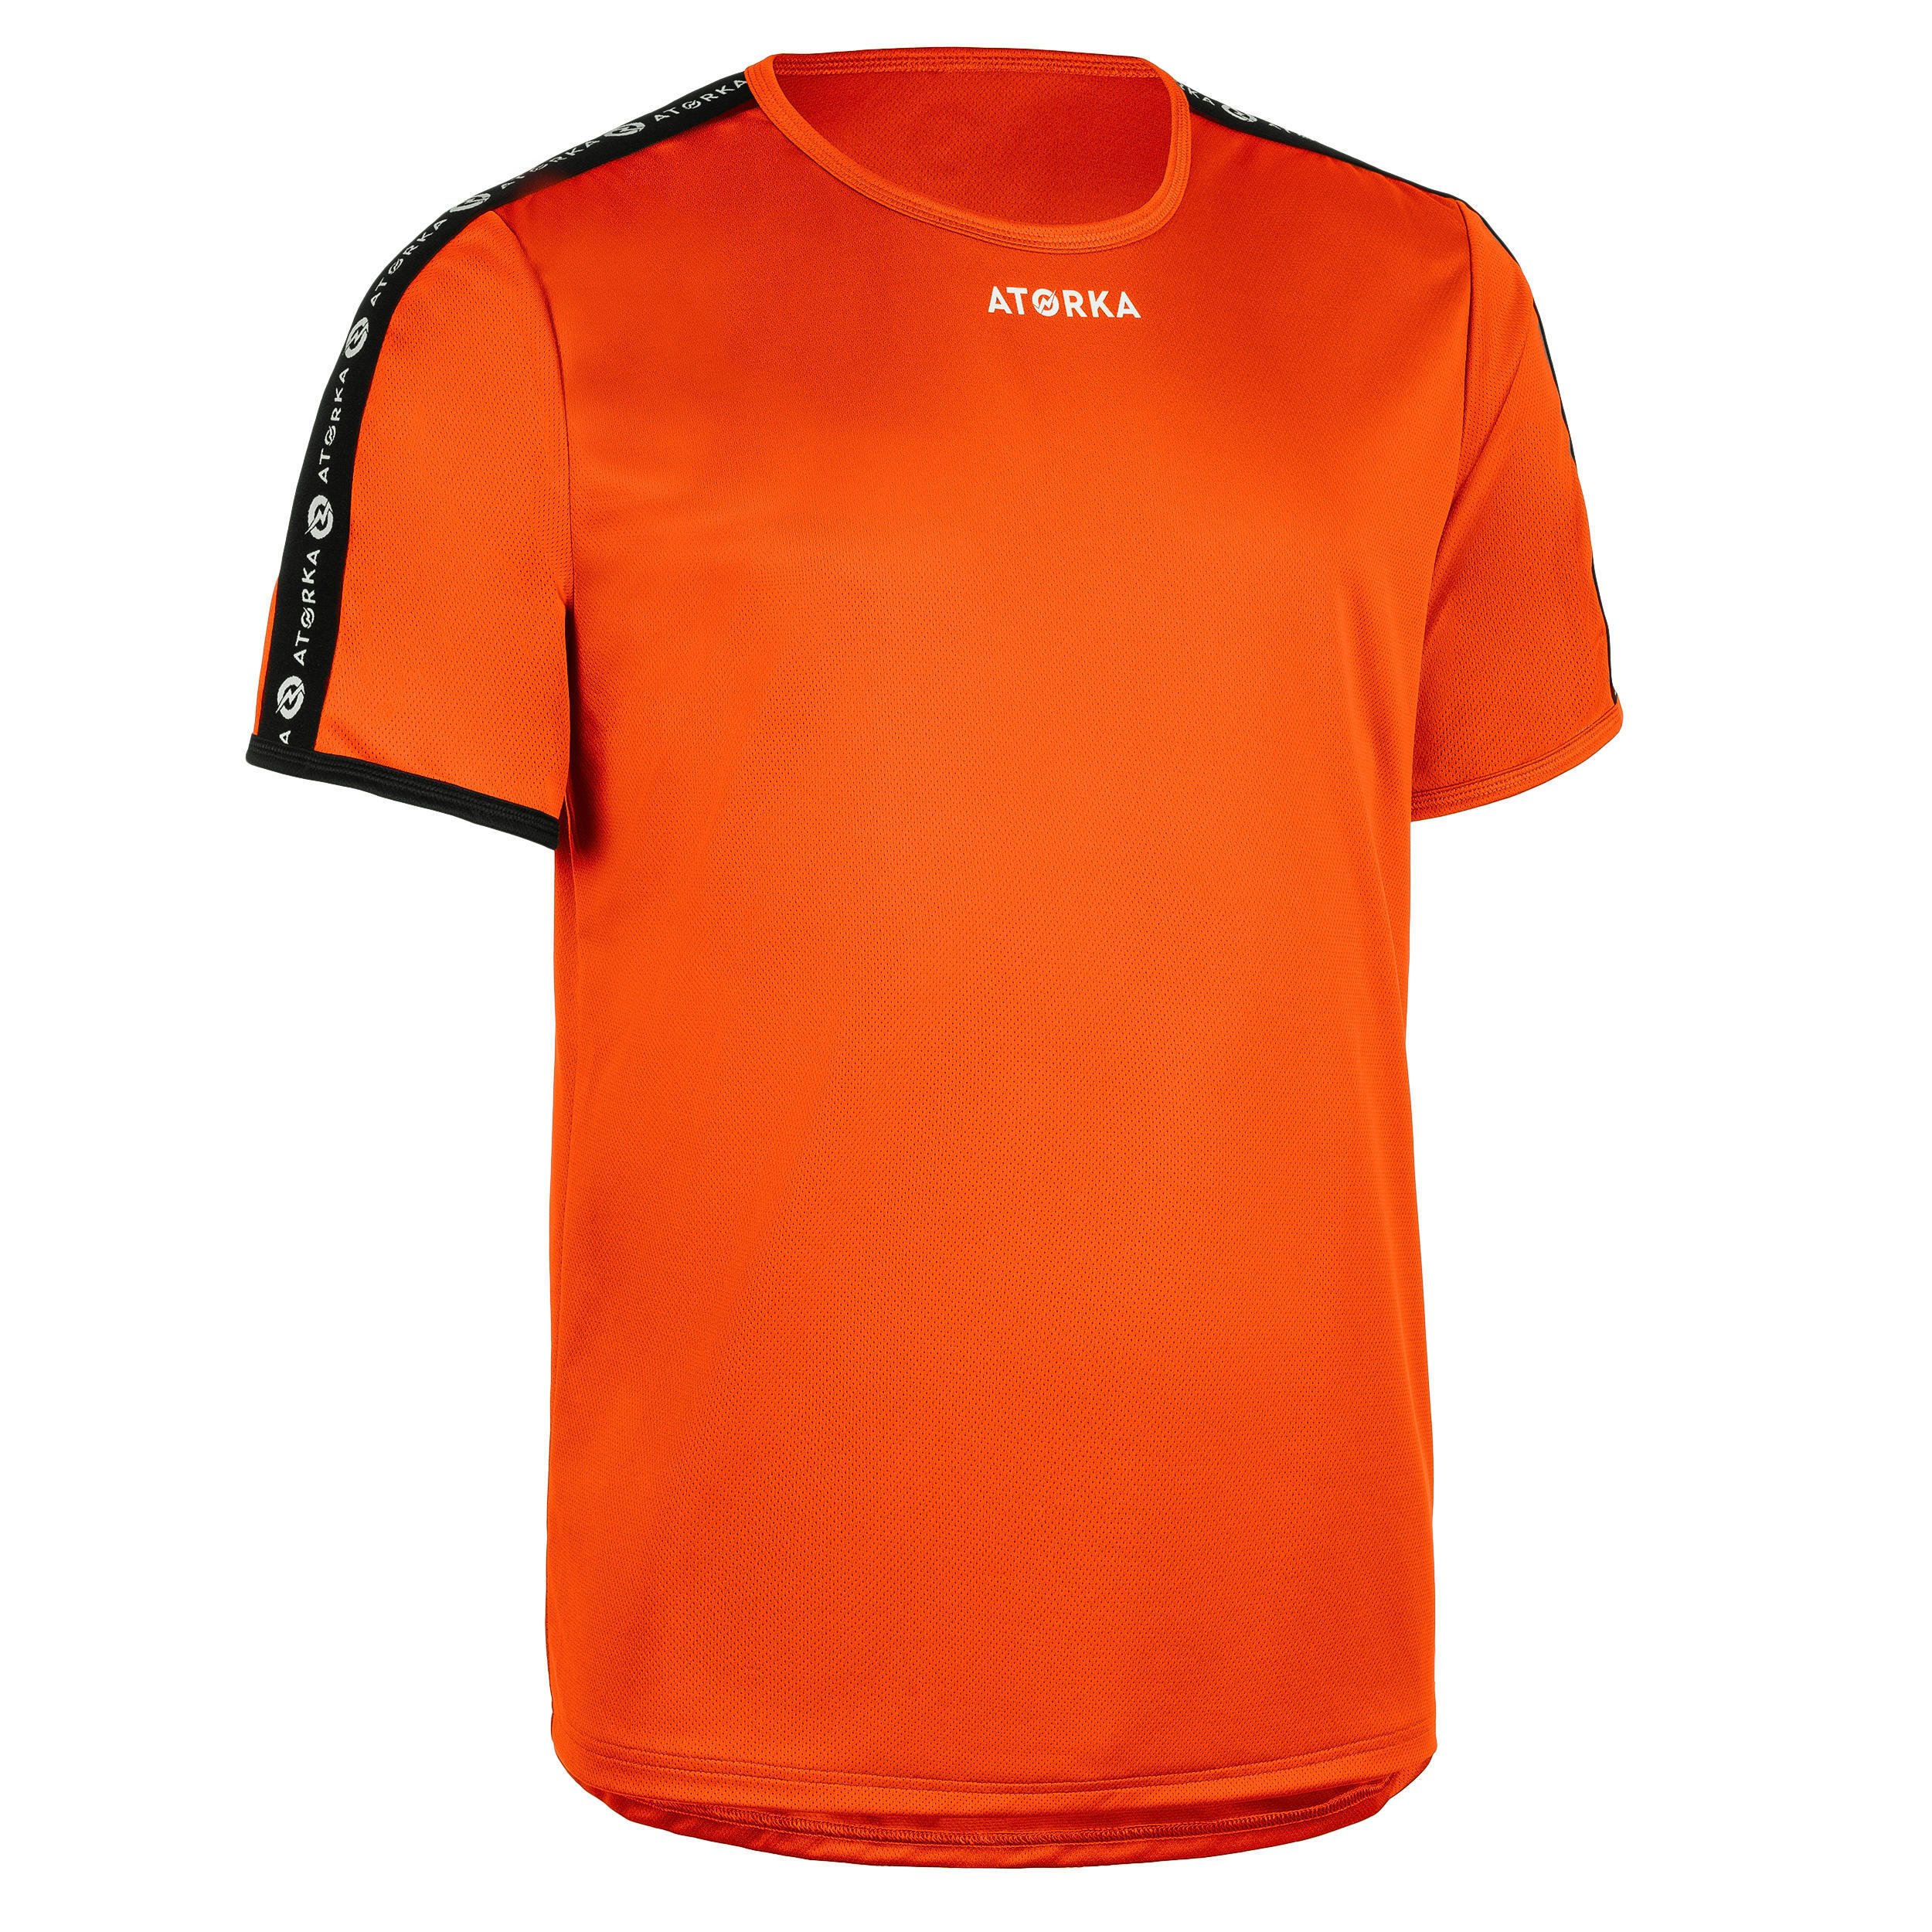 Гандбольная футболка H100C с короткими рукавами мужская оранжевая ATORKA, Королек цена и фото